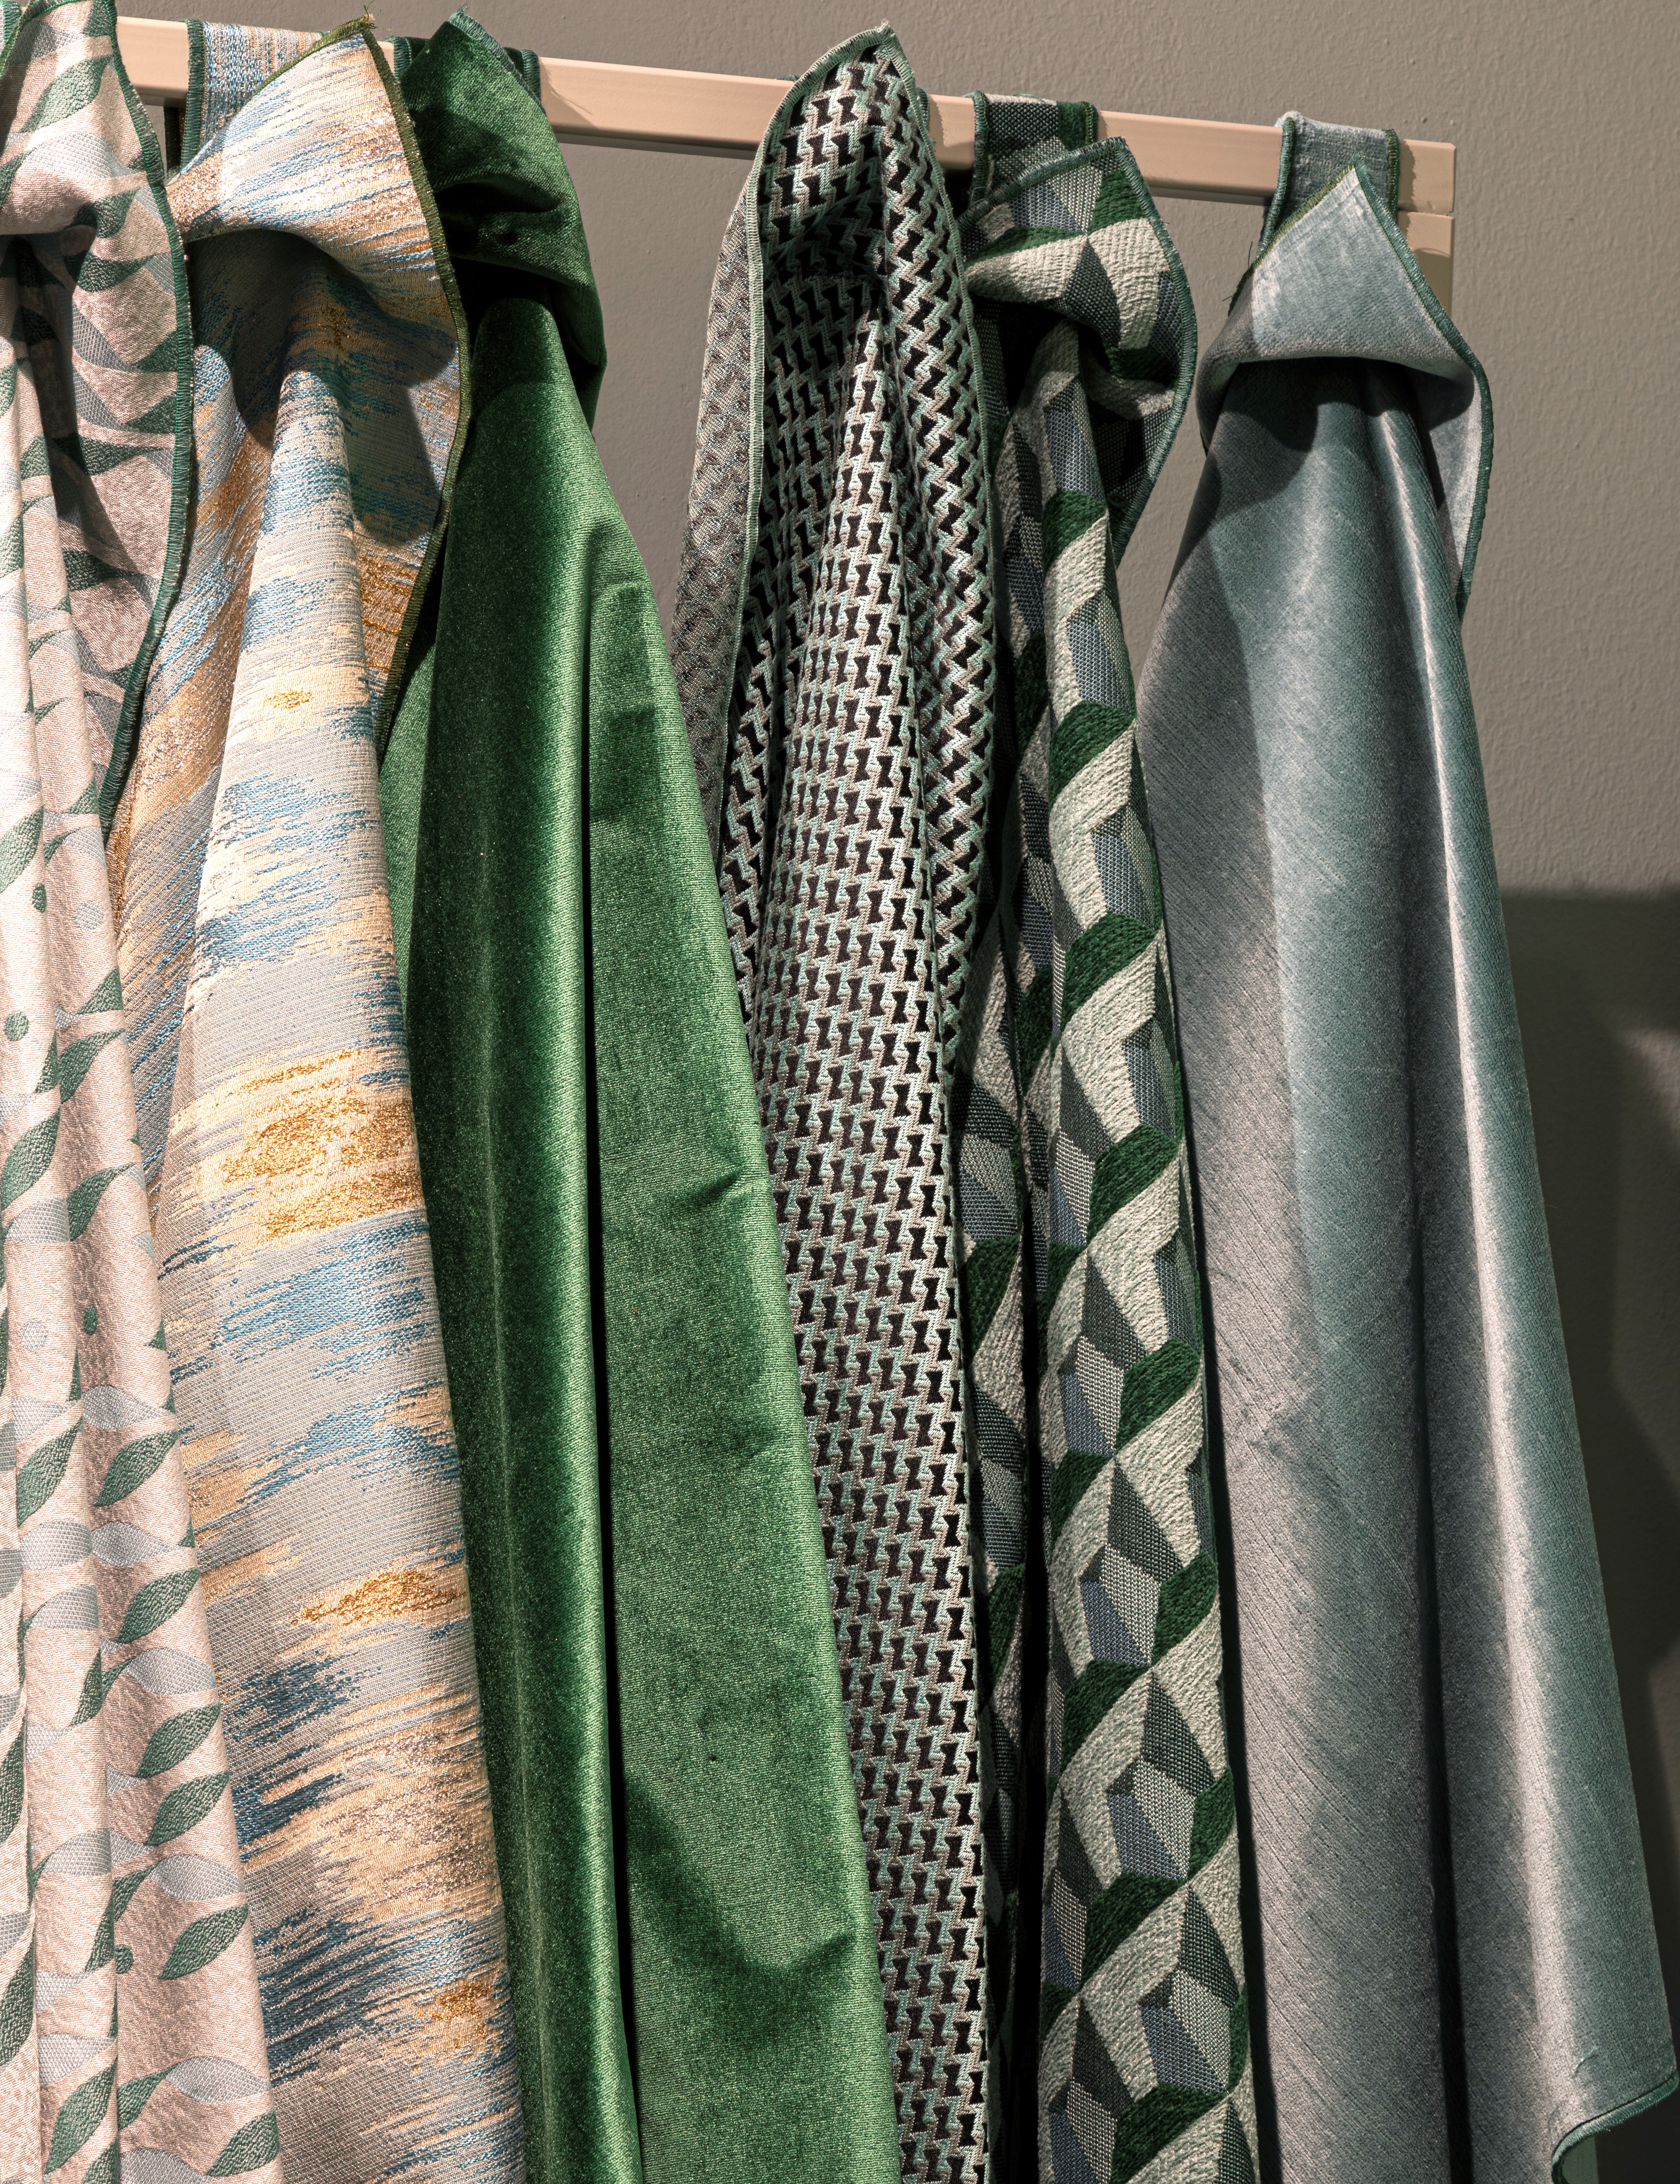 New fabrics presented at salone del Mobile 2022, photo Mattia Aquila 